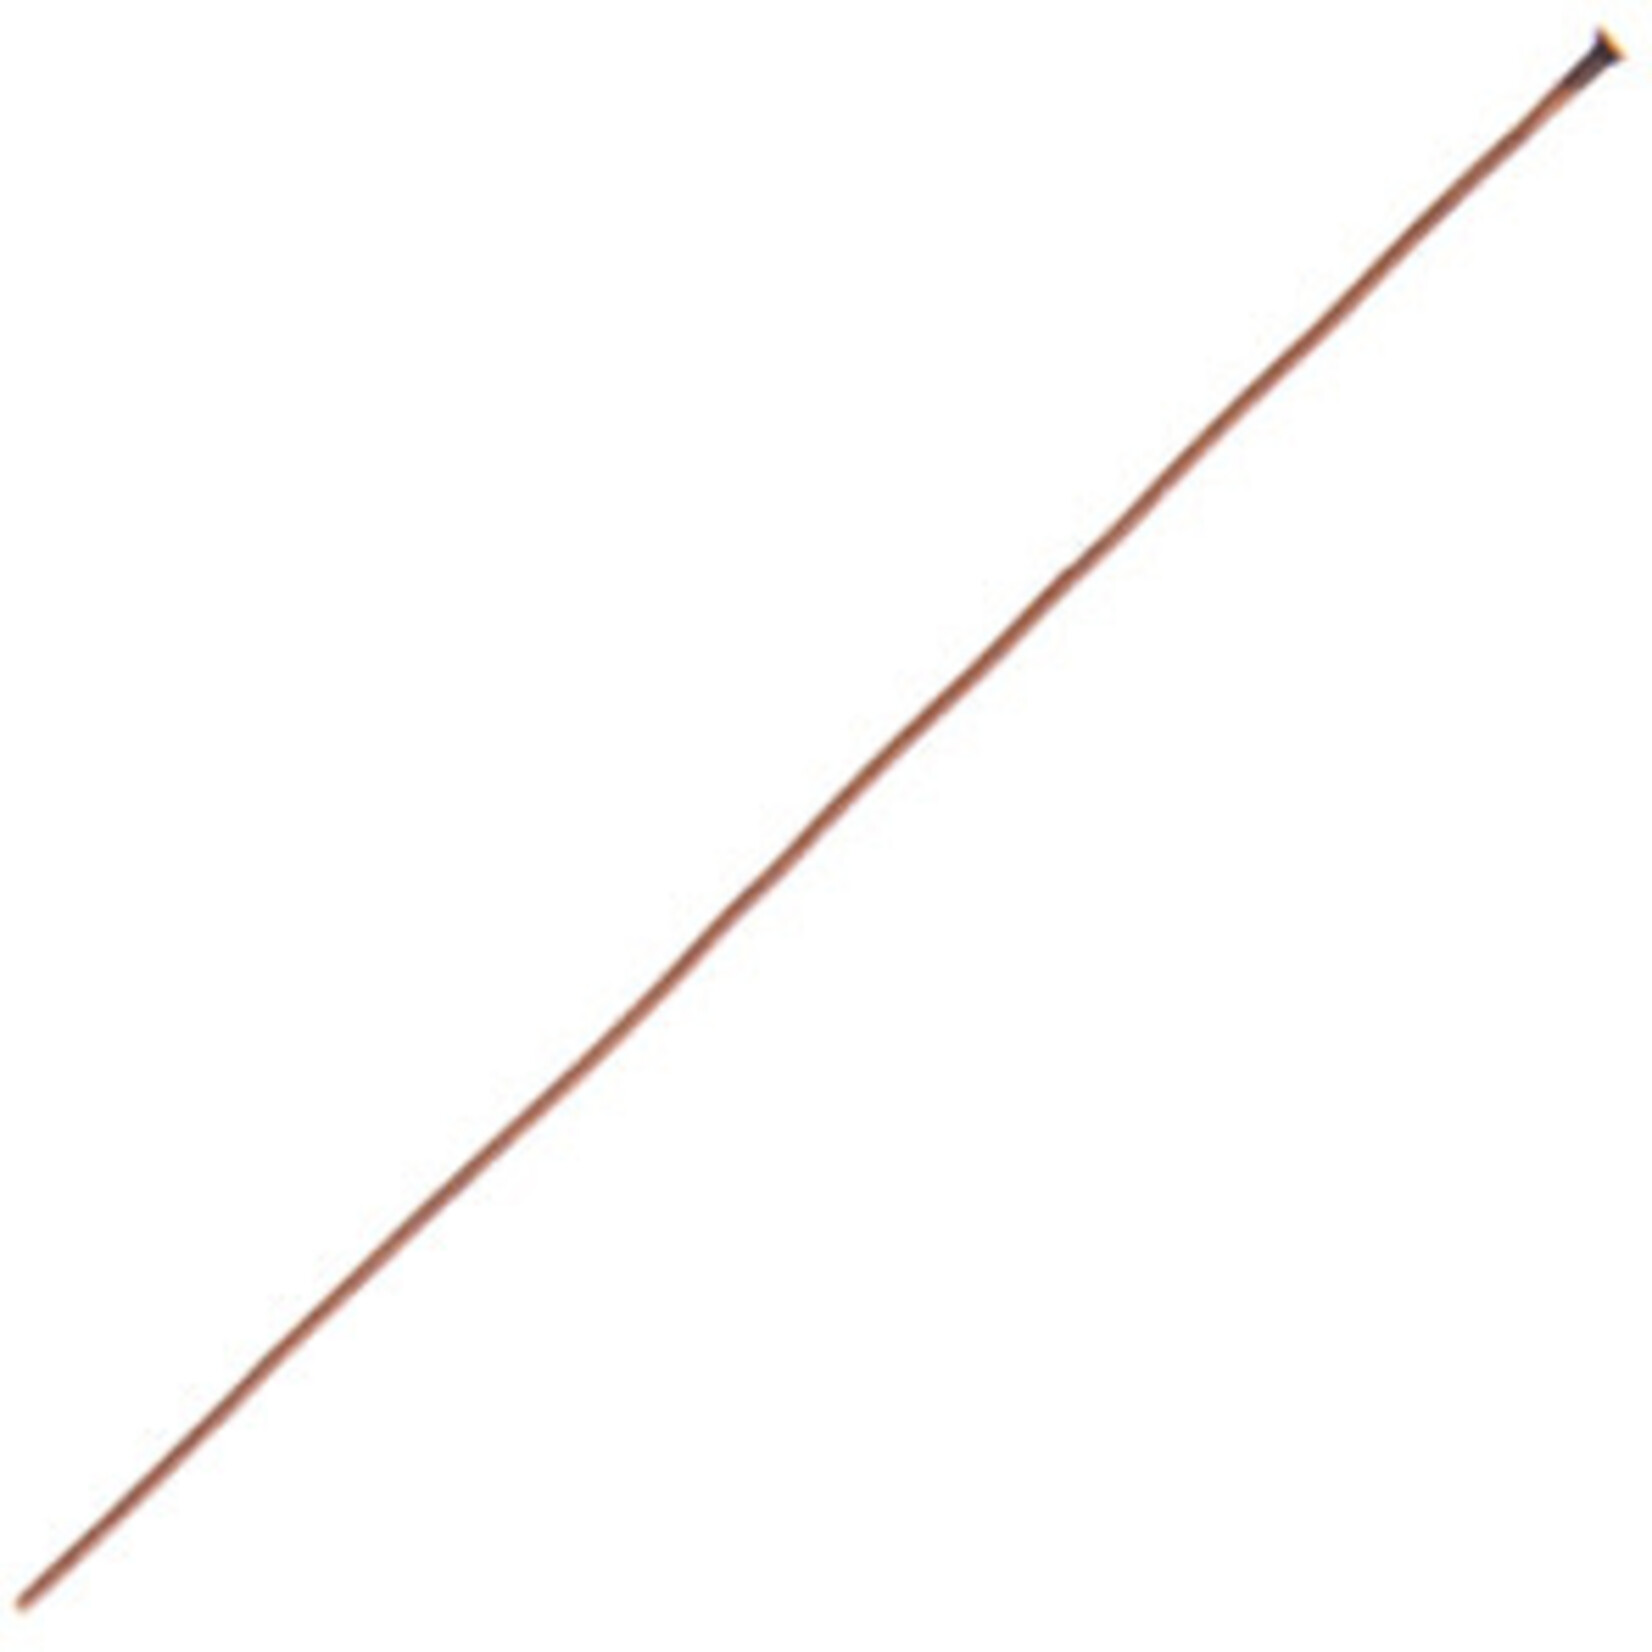 Head Pins (12 pcs) Antique Copper 1.5 Inches 24ga (.020)